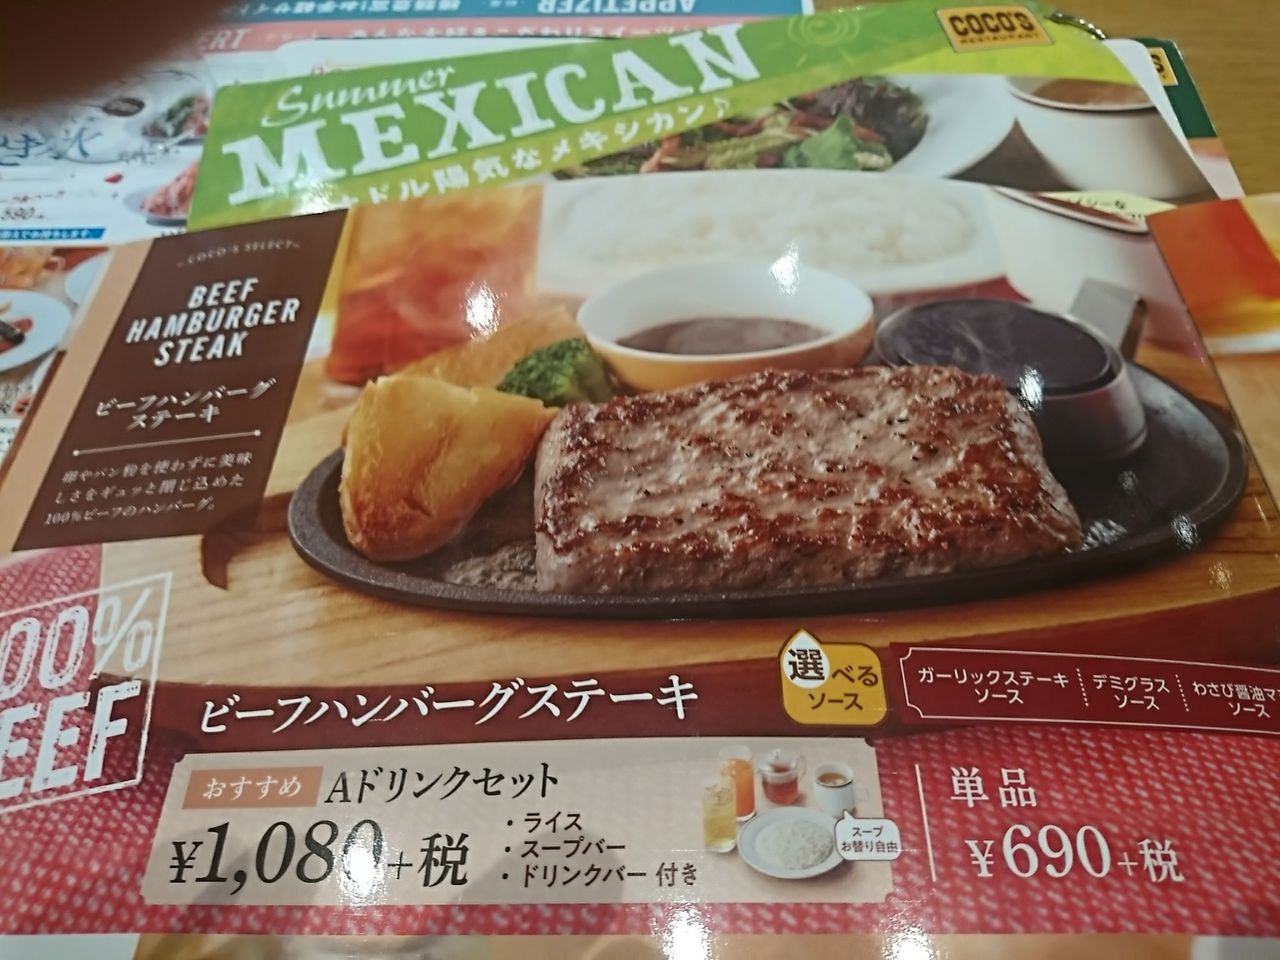 本日のランチ Coco S100 ビーフハンバーグステーキ まいう 初めて食べましたがとてもおいしかったですよ 富山のくすり屋さんの旅日記